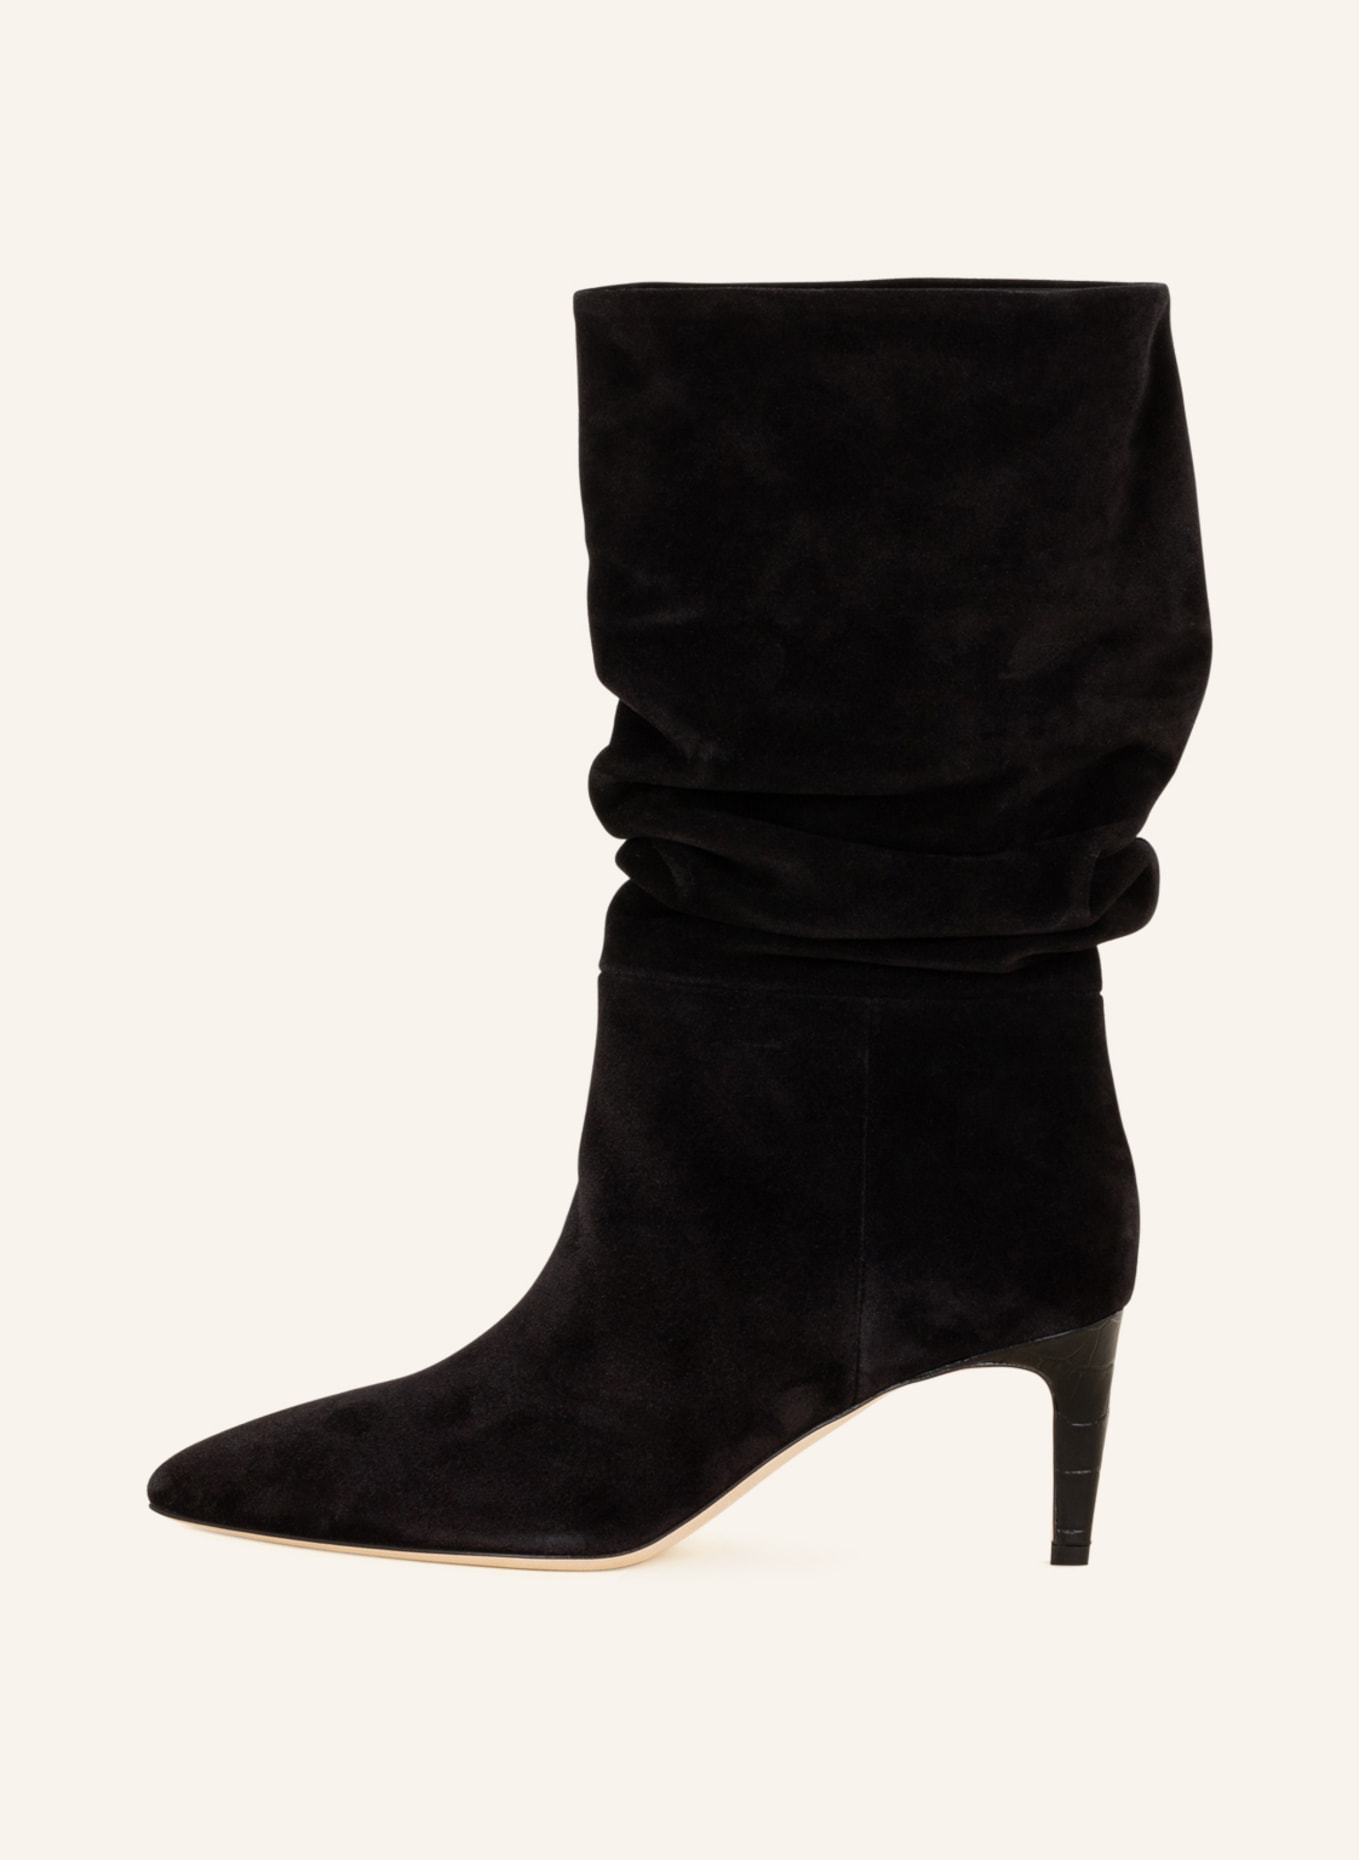 PARIS TEXAS Boots, Color: BLACK (Image 4)